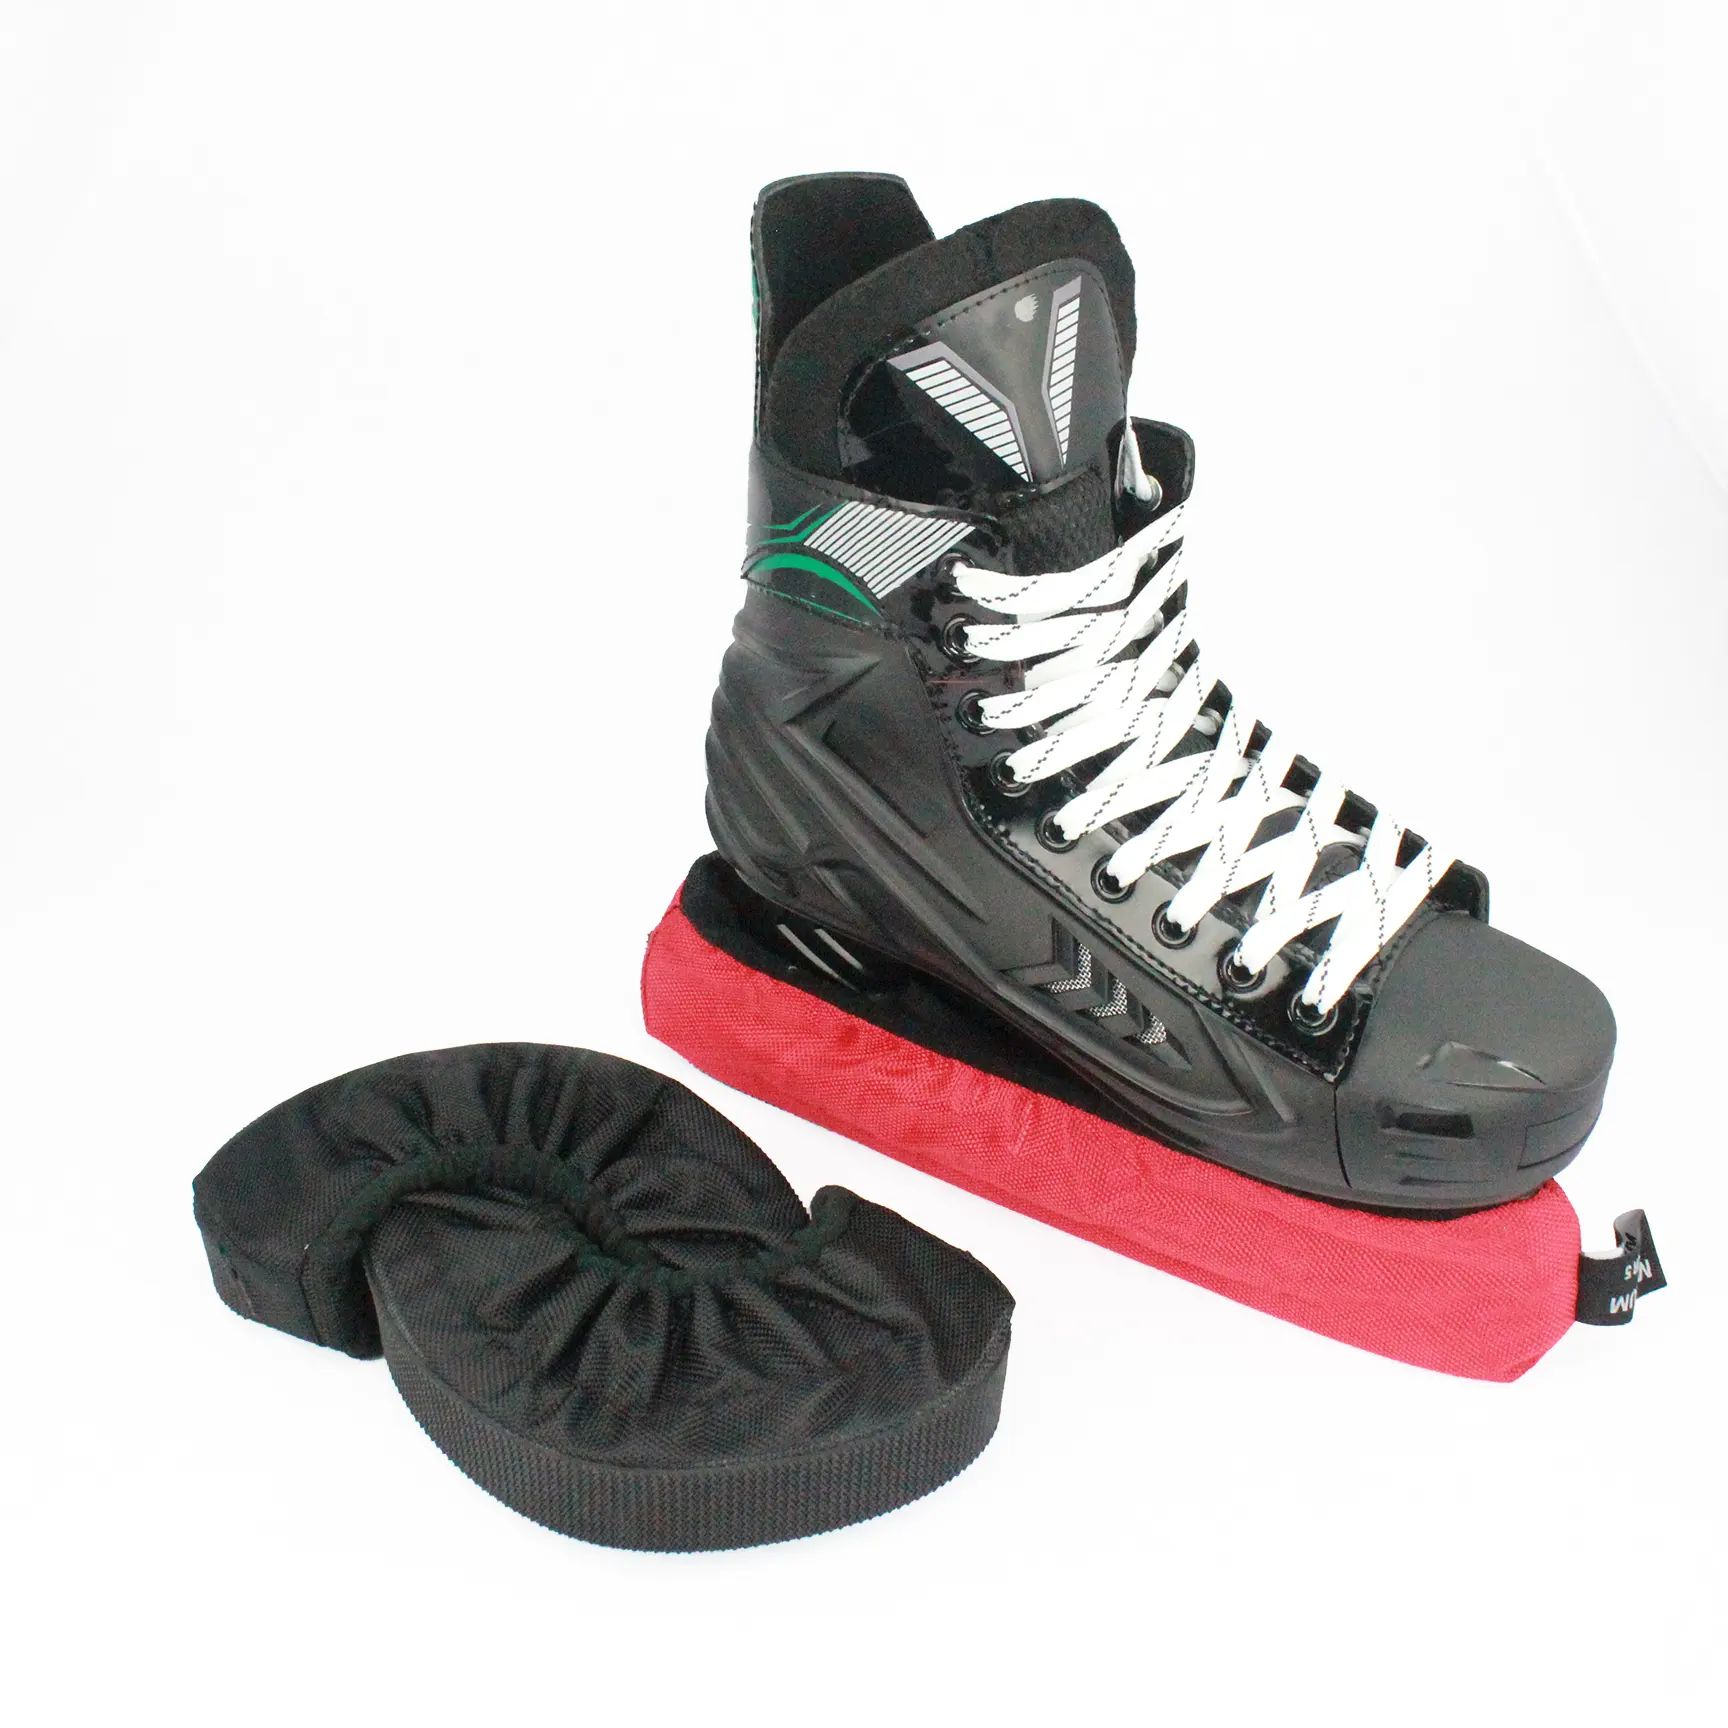 Cubiertas para patines de hielo Cubiertas para patines de hockey Soakers Cubiertas para patines